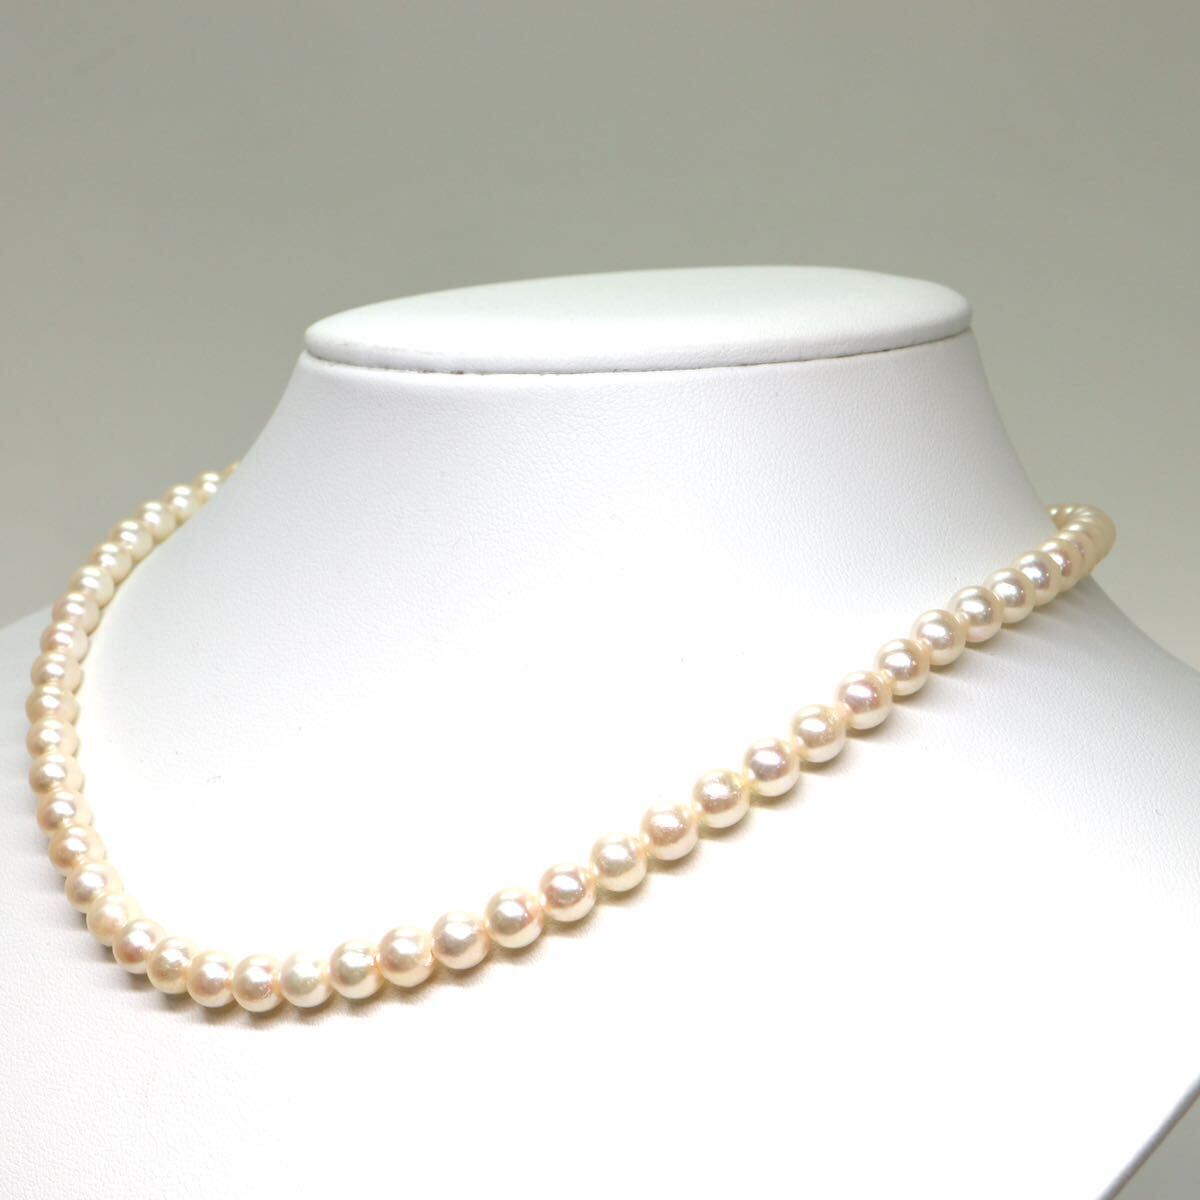 《アコヤ本真珠ネックレス》A 約6.0-6.5mm珠 24.2g 約41cm pearl necklace ジュエリー jewelry DB0/DC0の画像3